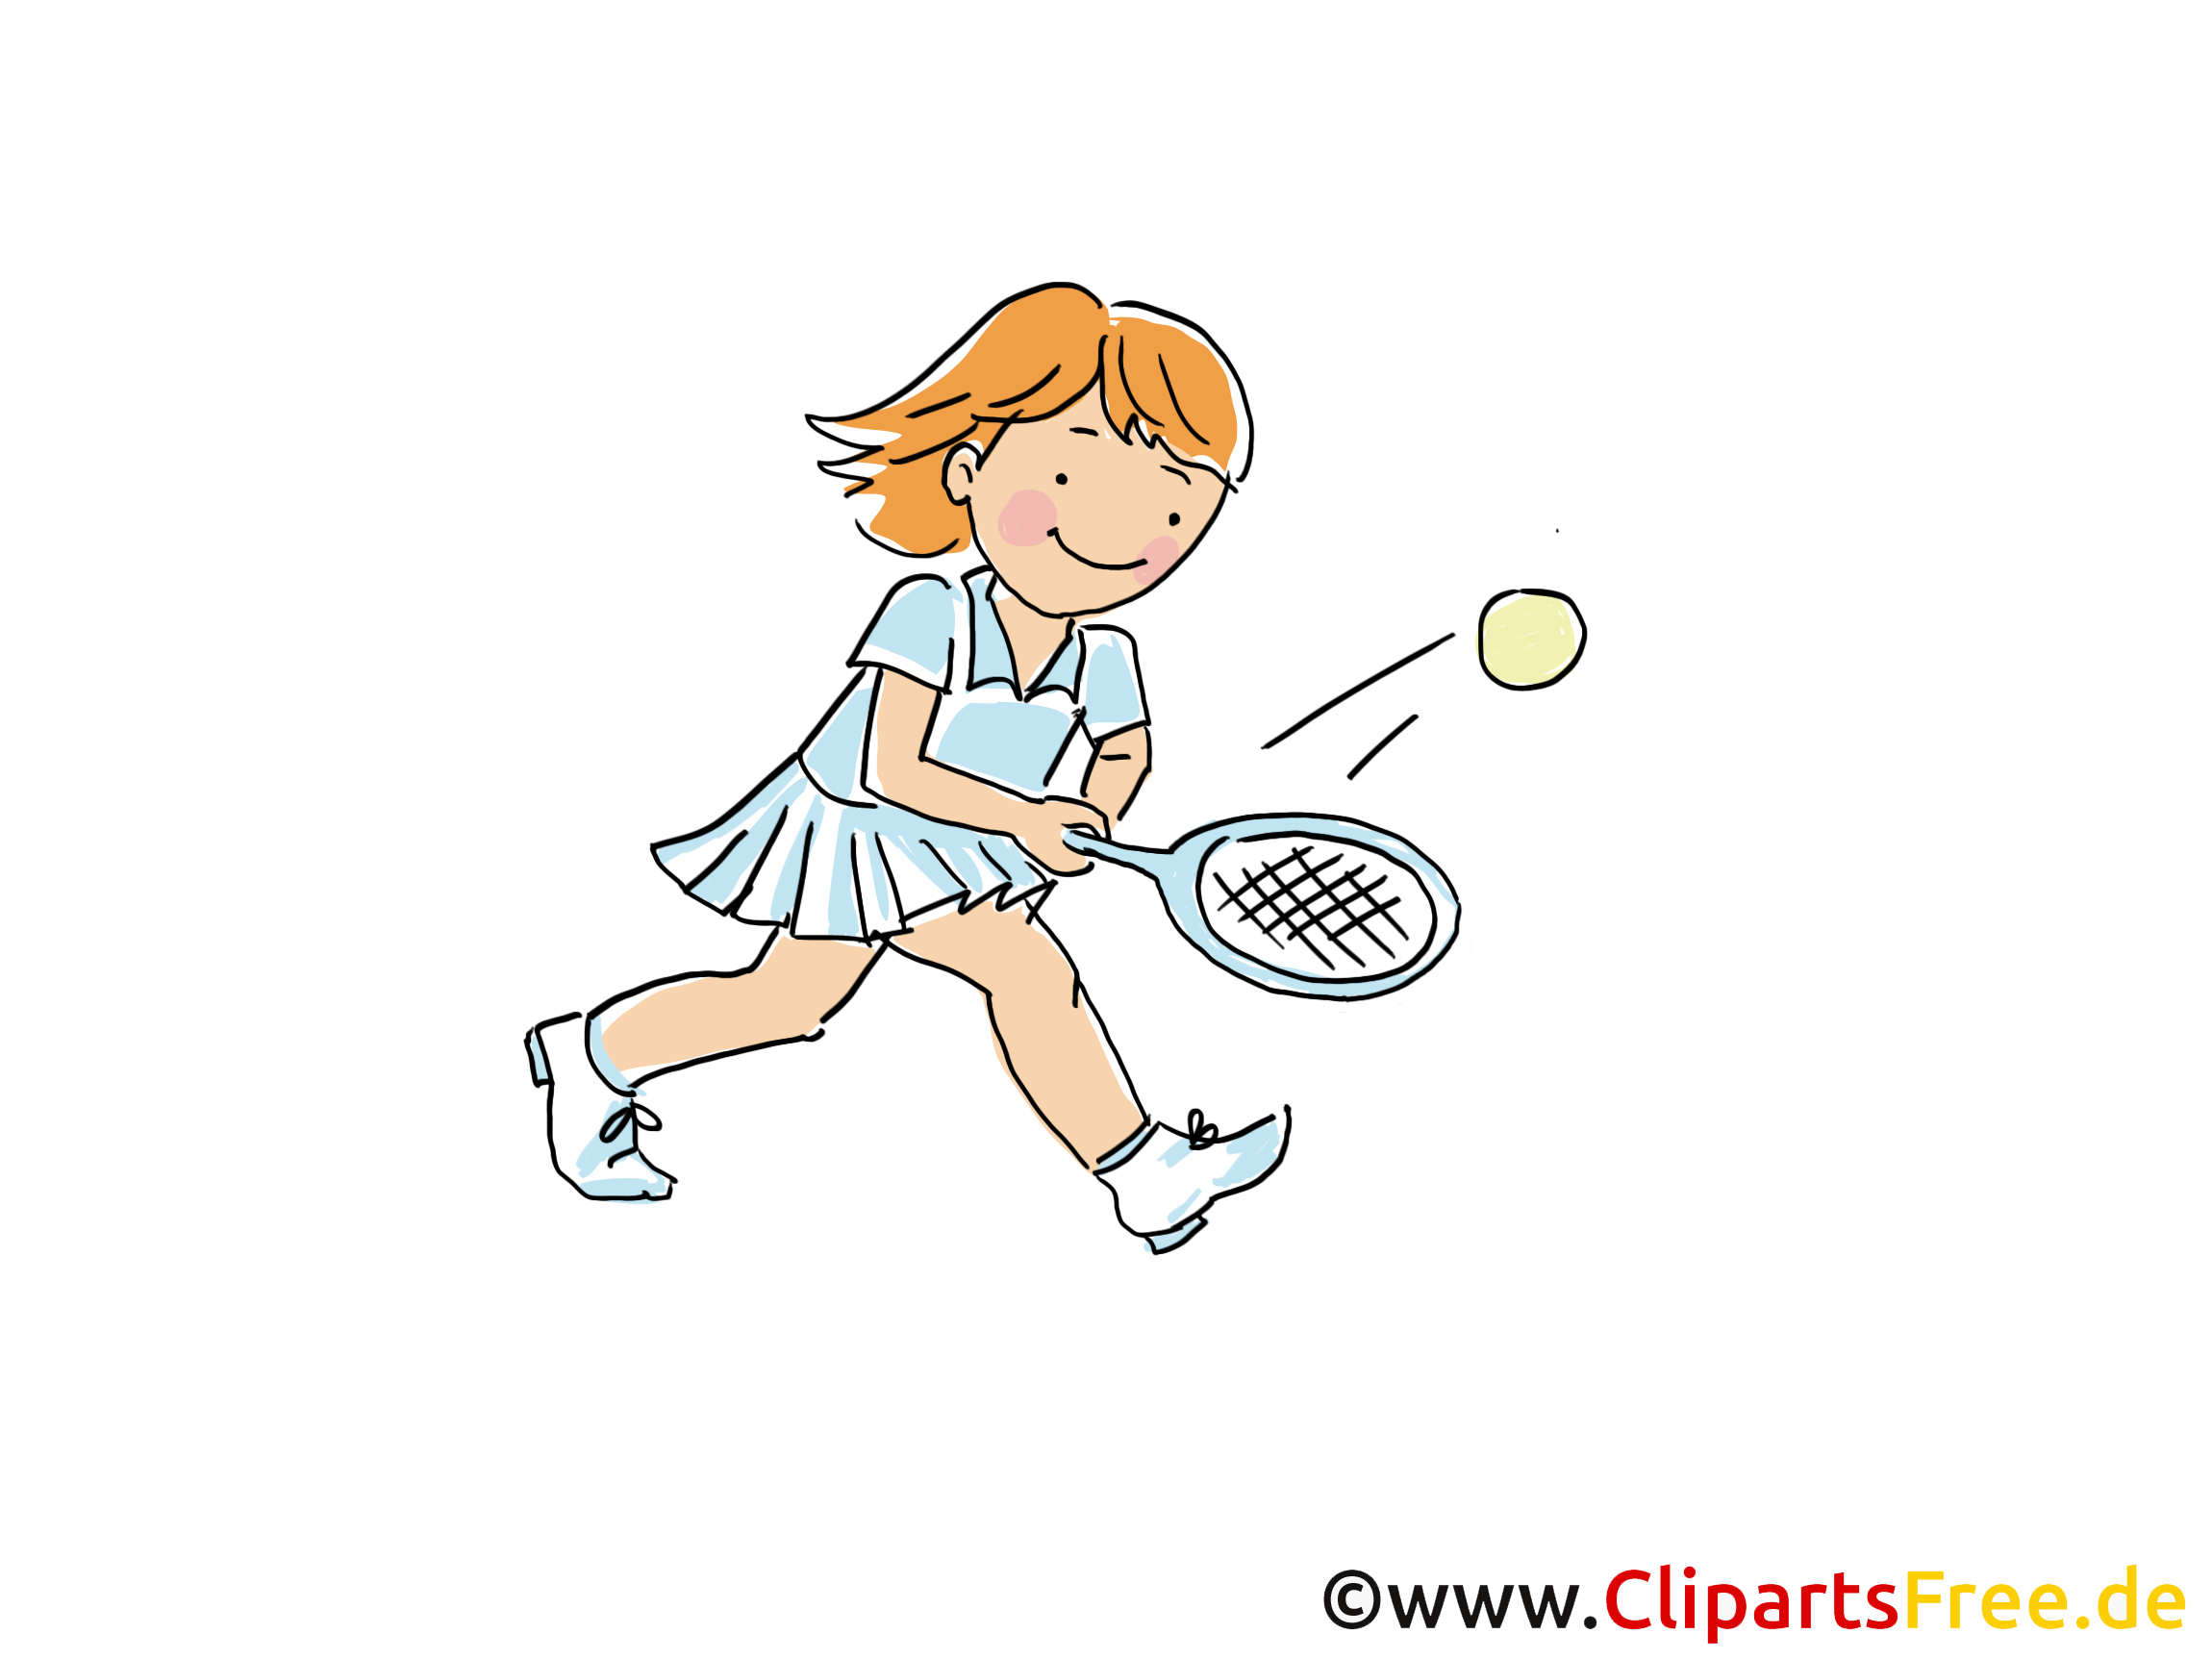 clipart kostenlos tennis - photo #34